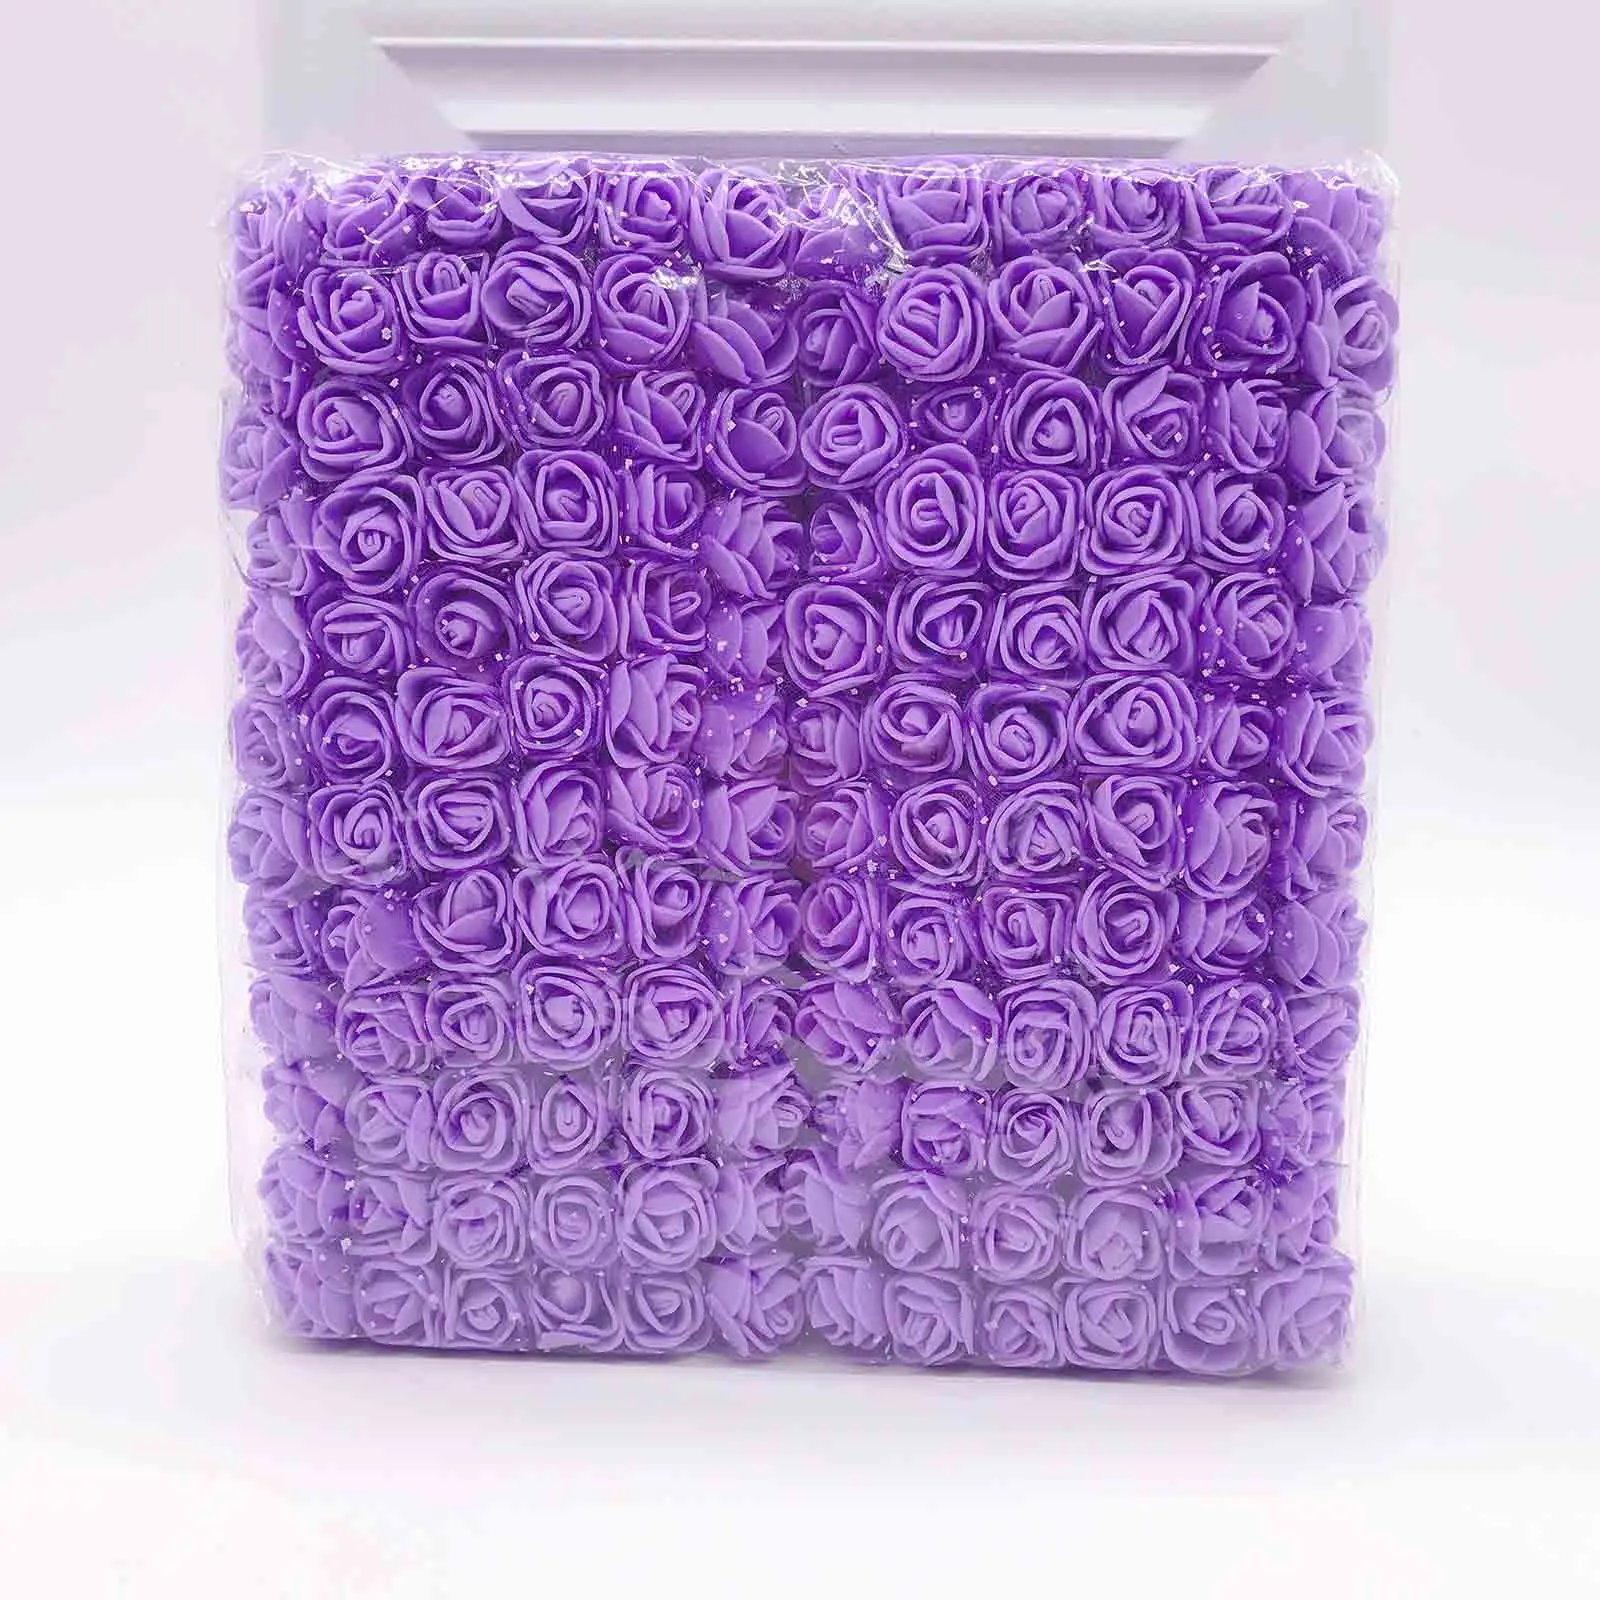 Распродажа!(144 шт./лот) 2 см многоцветные ПЭ розы пены мини букет цветов сплошной цвет/Скрапбукинг Искусственные цветы розы из пены - Цвет: 9 purple